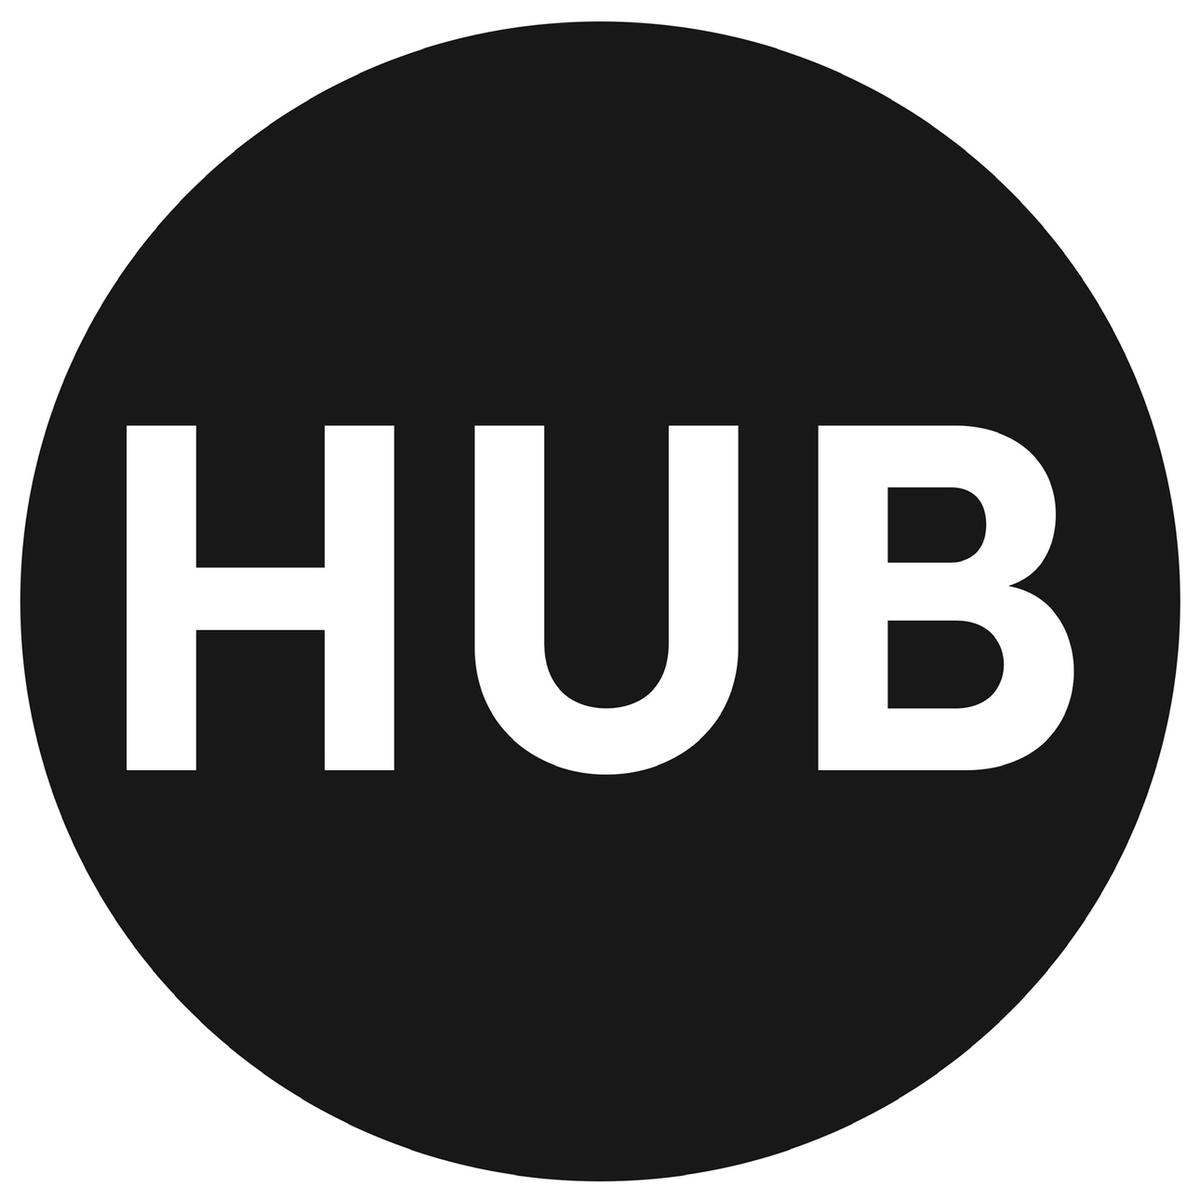 Boutique Hub's images